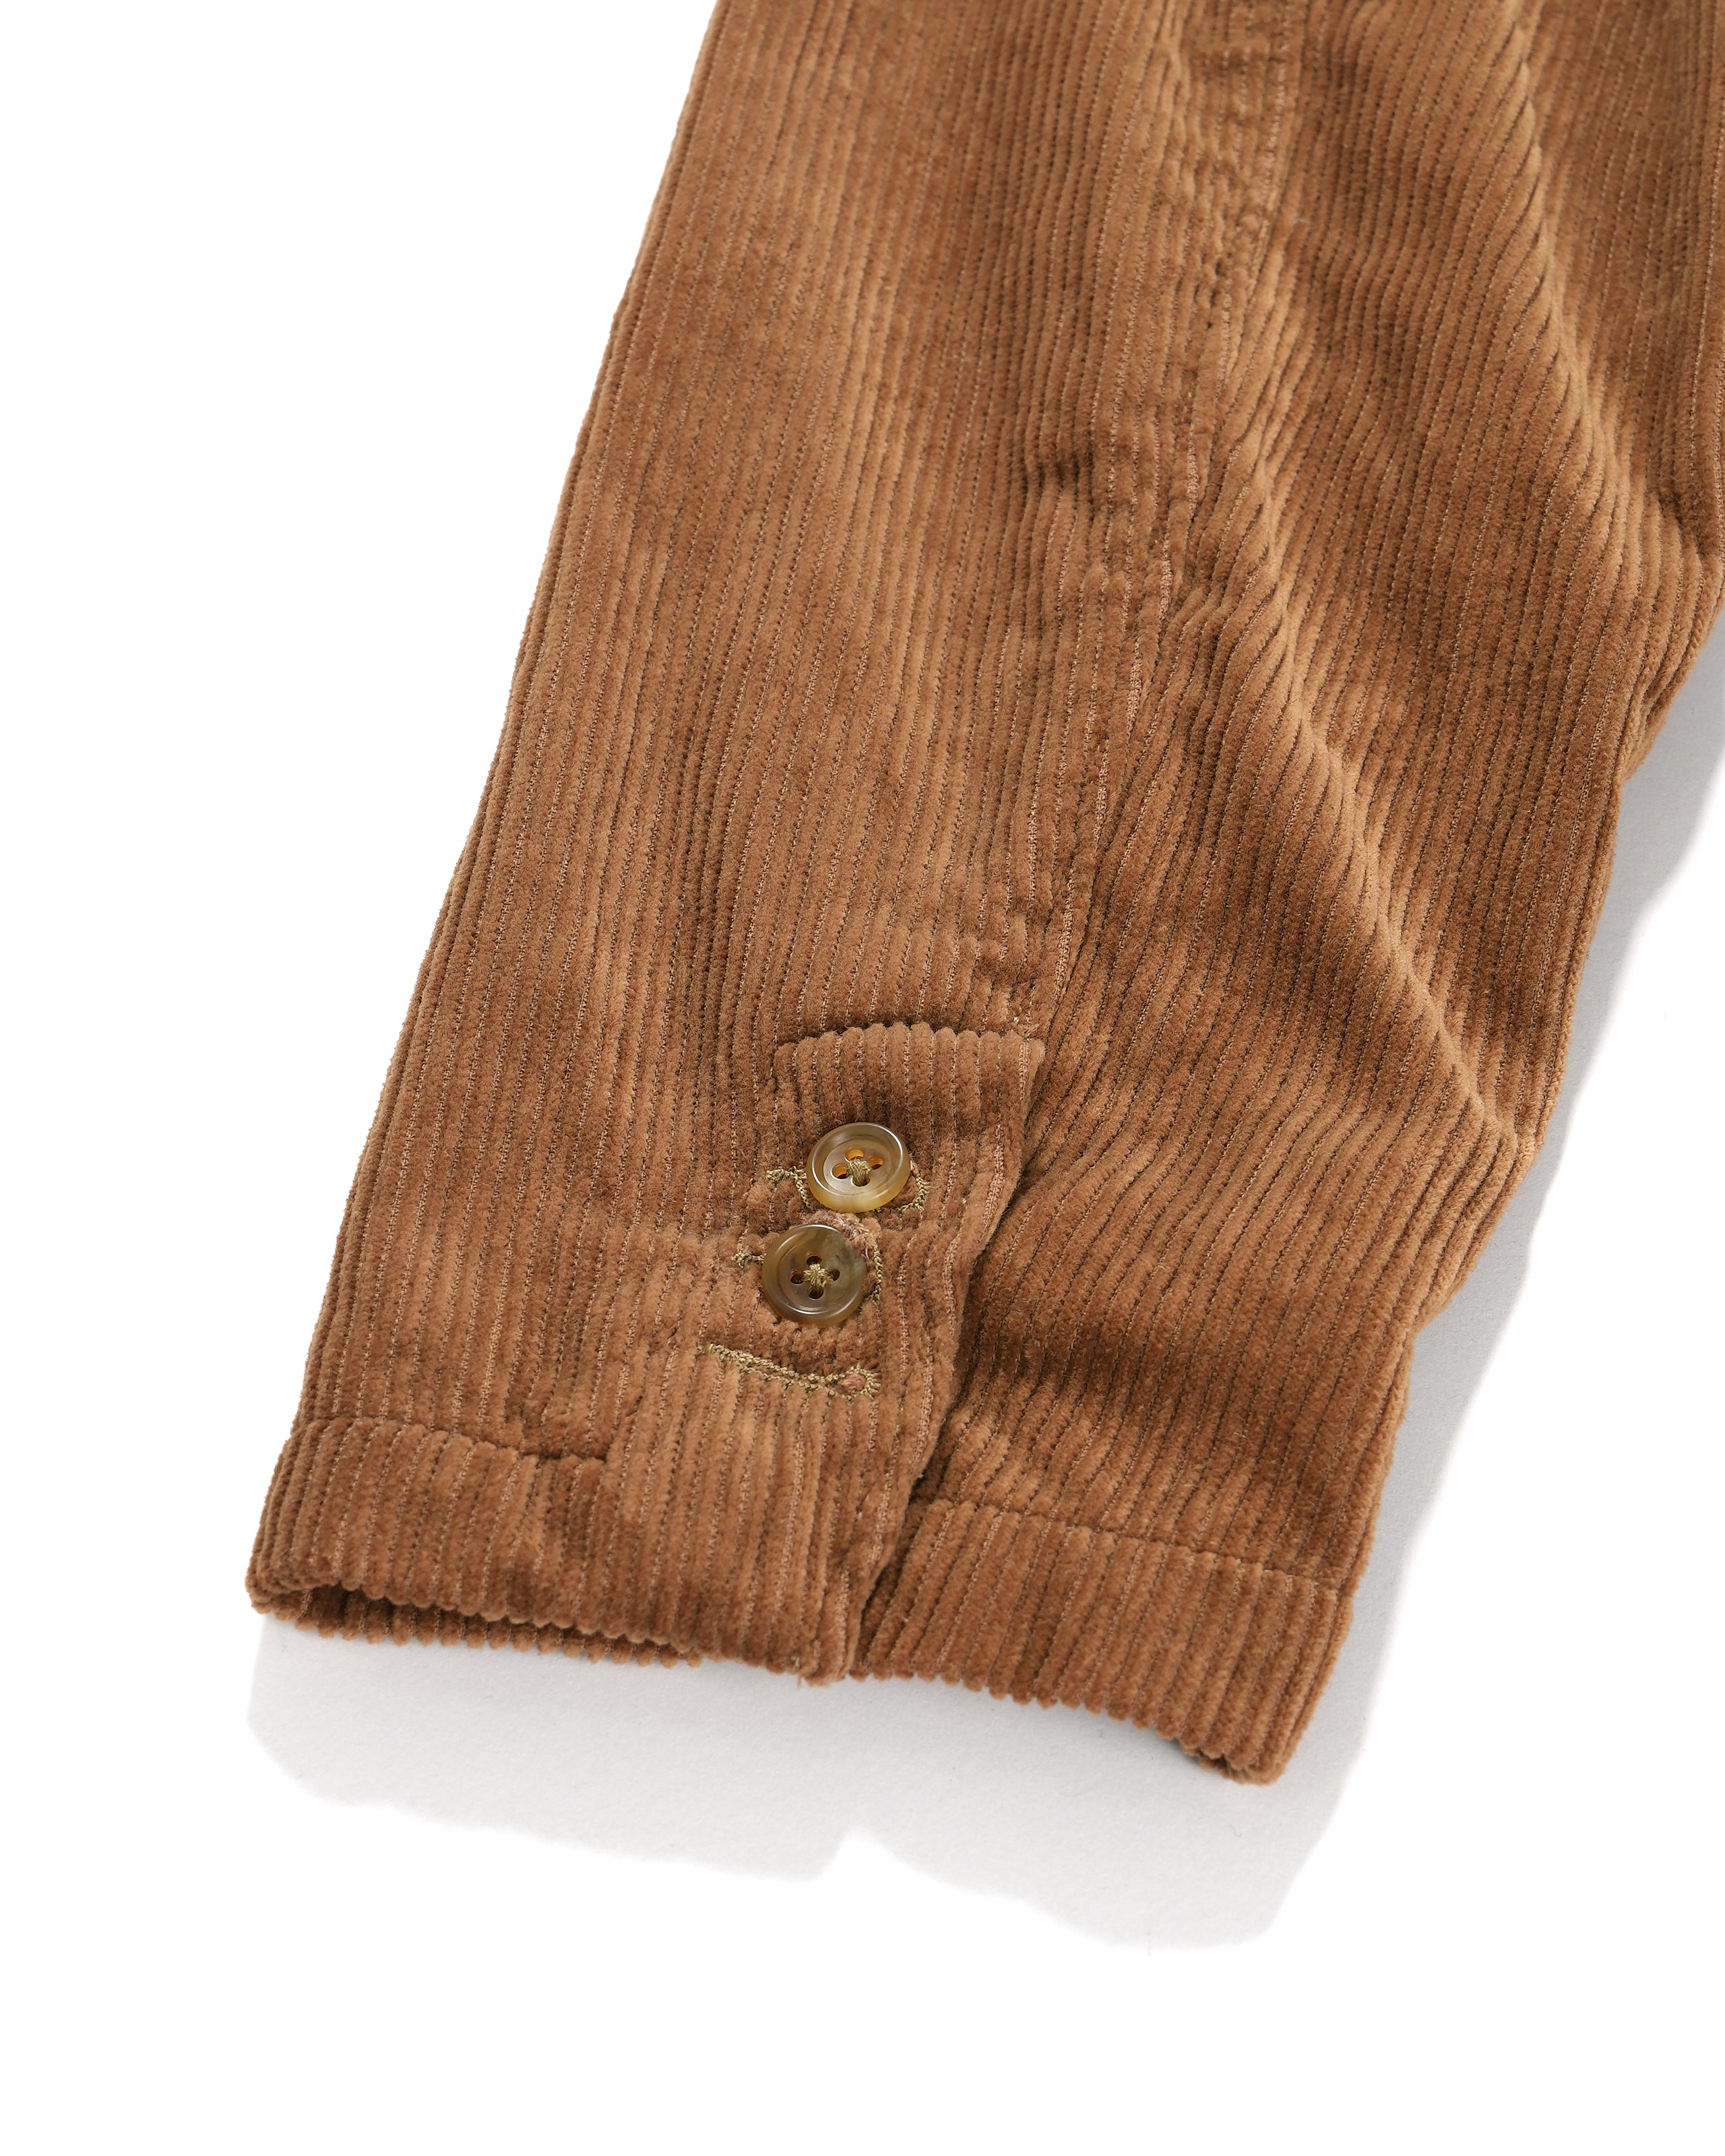 Loiter Jacket - Chestnut Cotton 8W Corduroy